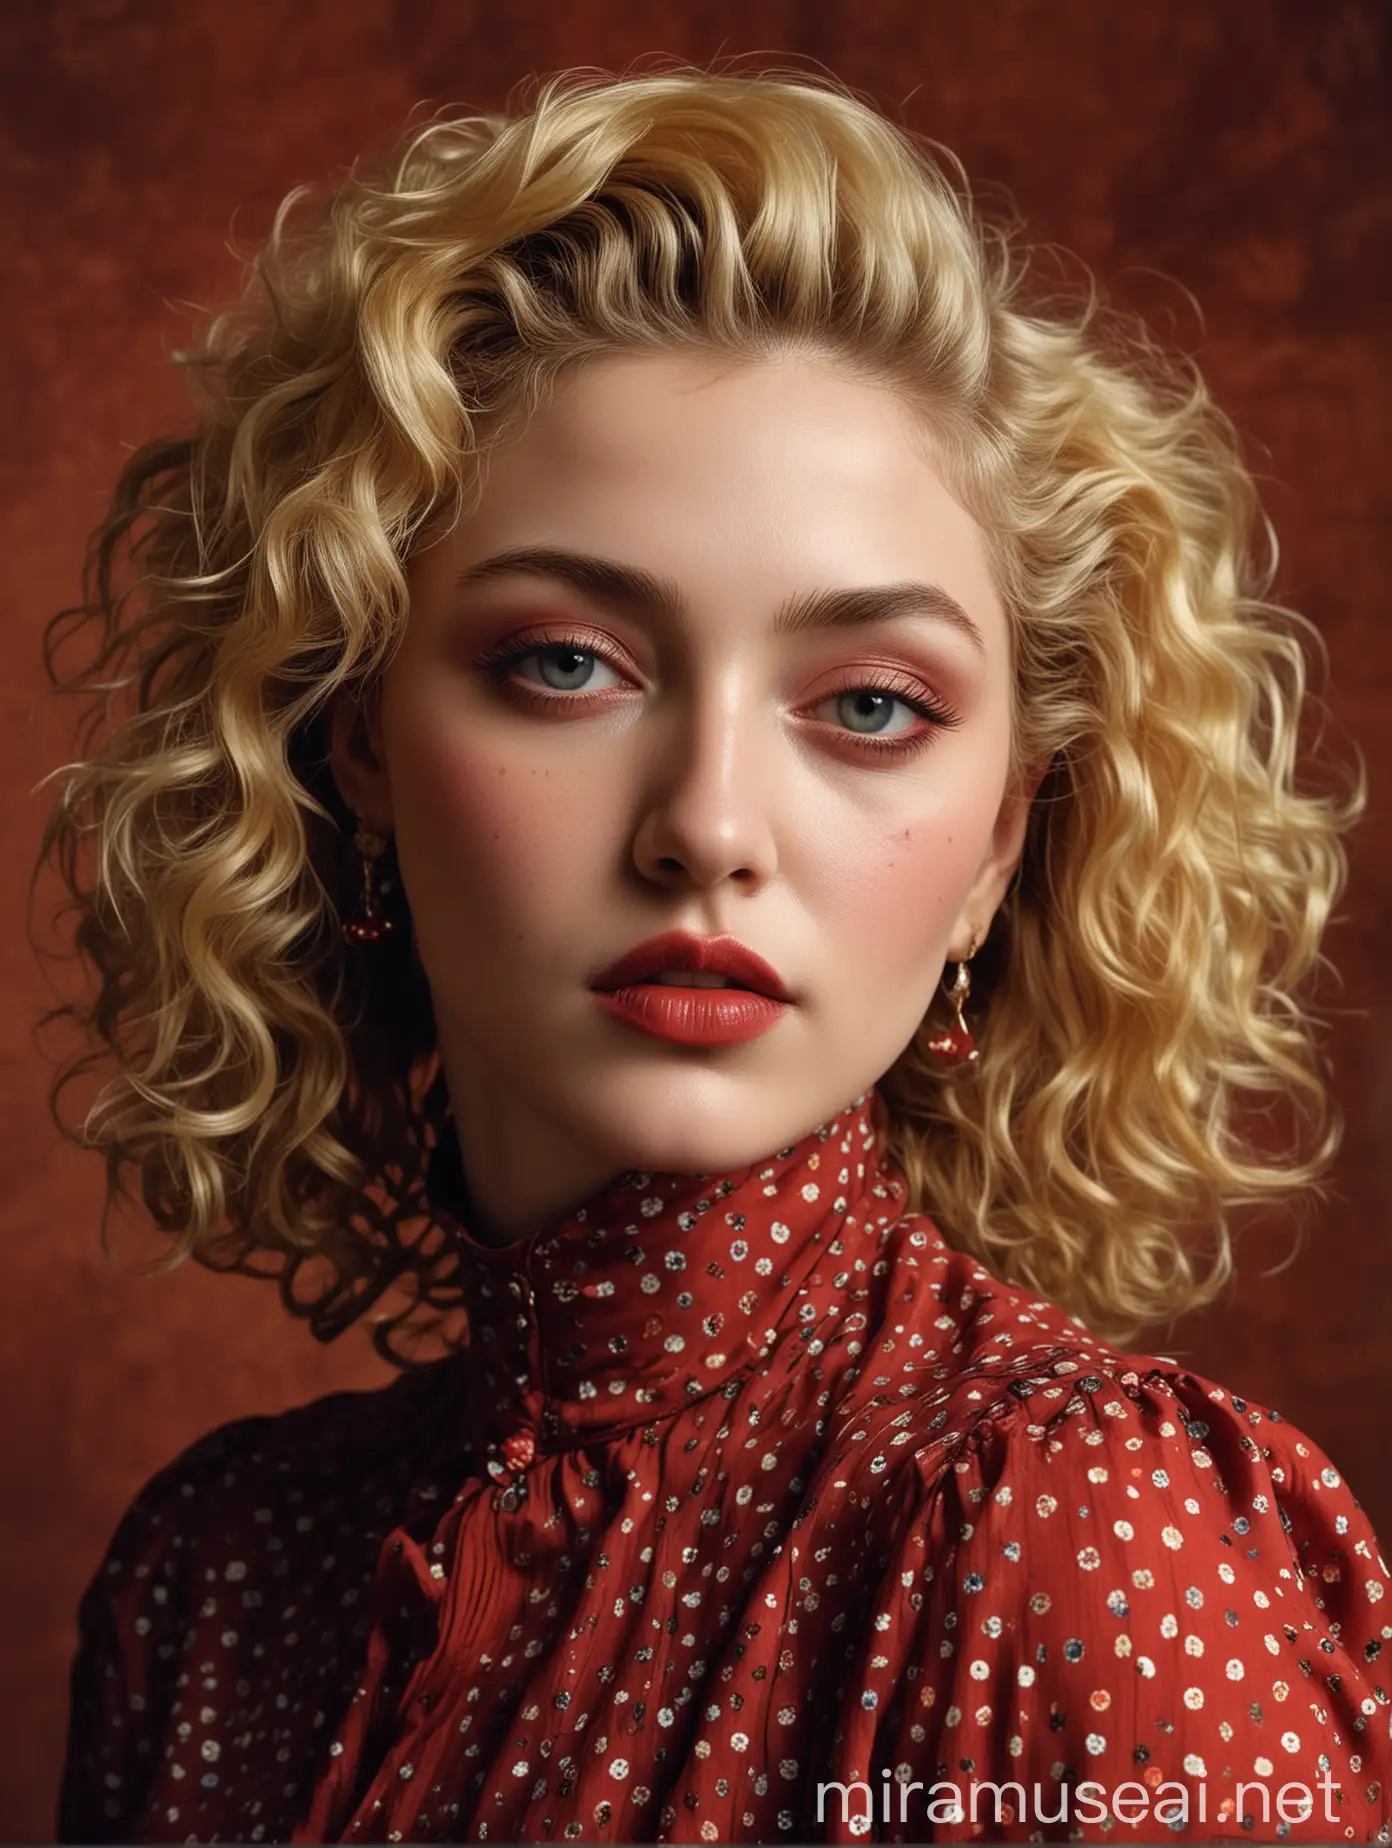 Ethereal Madonna Portrait Vibrant Blonde Bold Red Lips Vintage Polka Dots